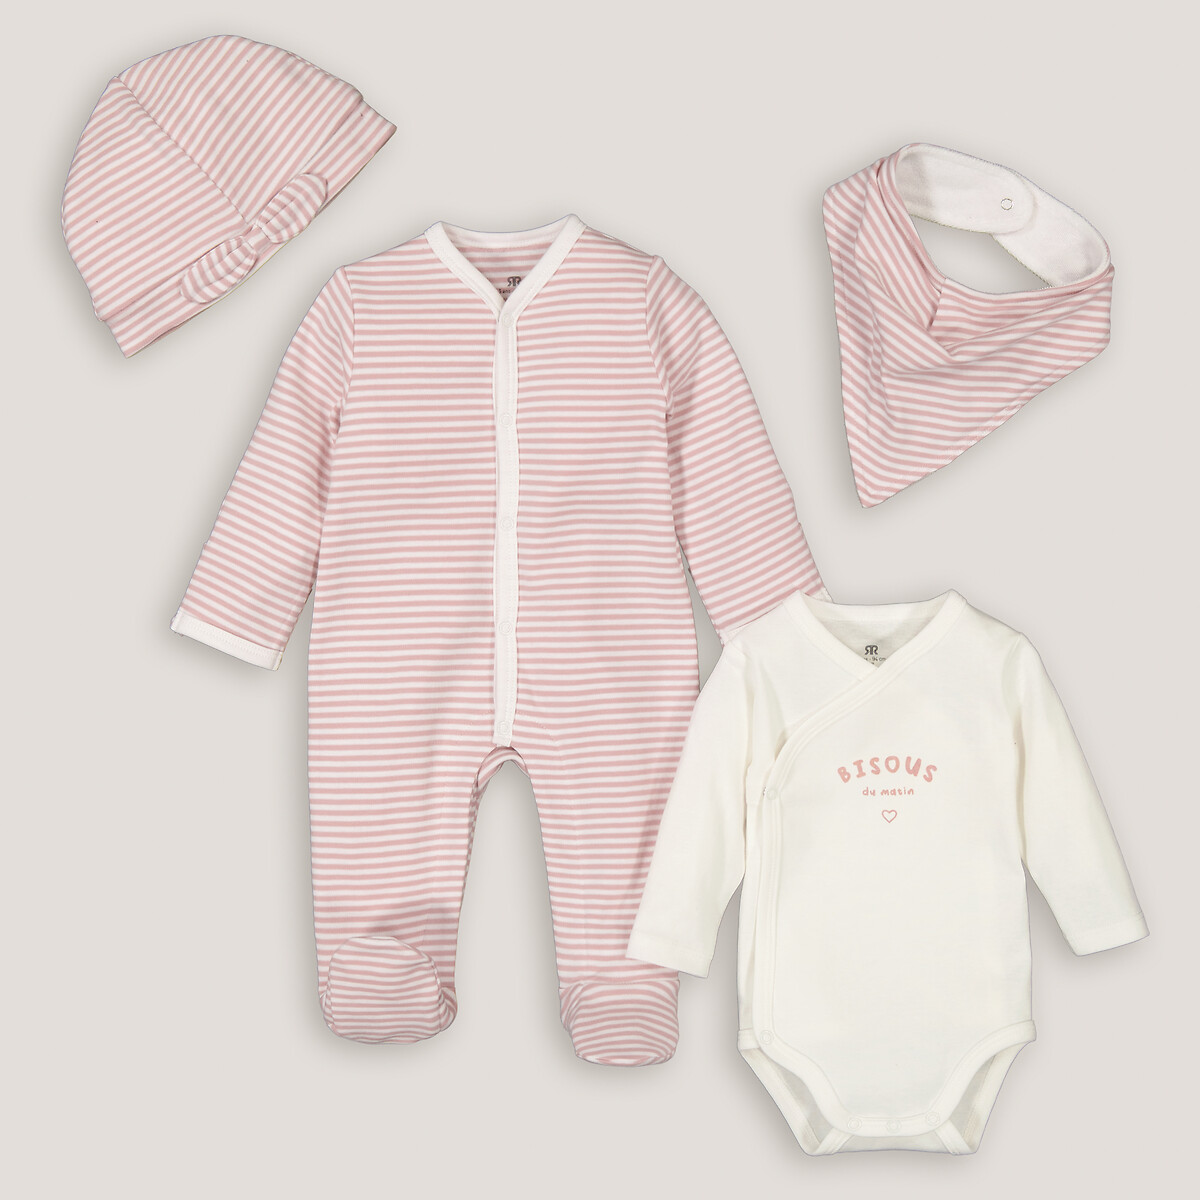 Комплект для новорожденного из четырех вещей 3 мес. - 60 см розовый комплект из 2 вещей футболка шорты 3 мес 60 см бежевый